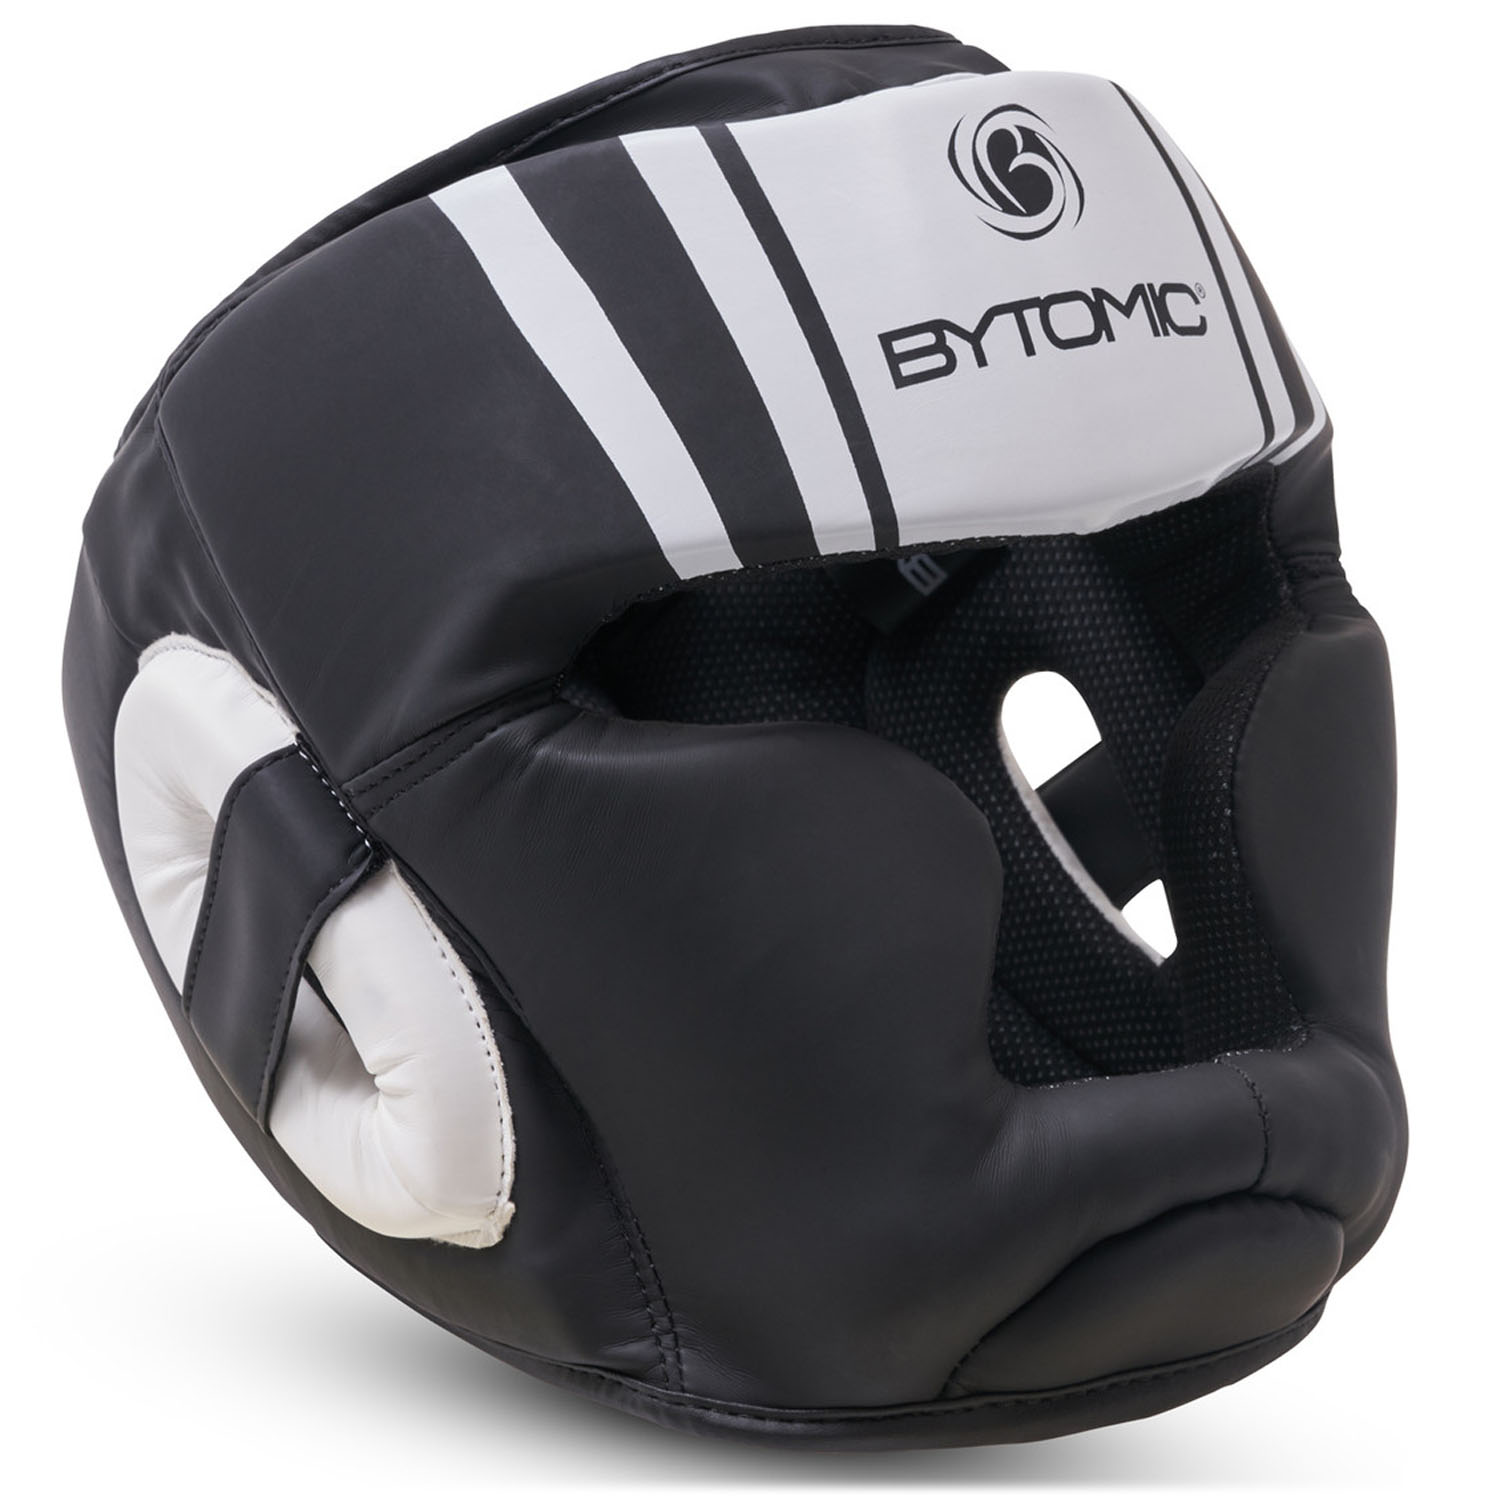 Bytomic Kopfschutz, Axis V2, schwarz-weiß